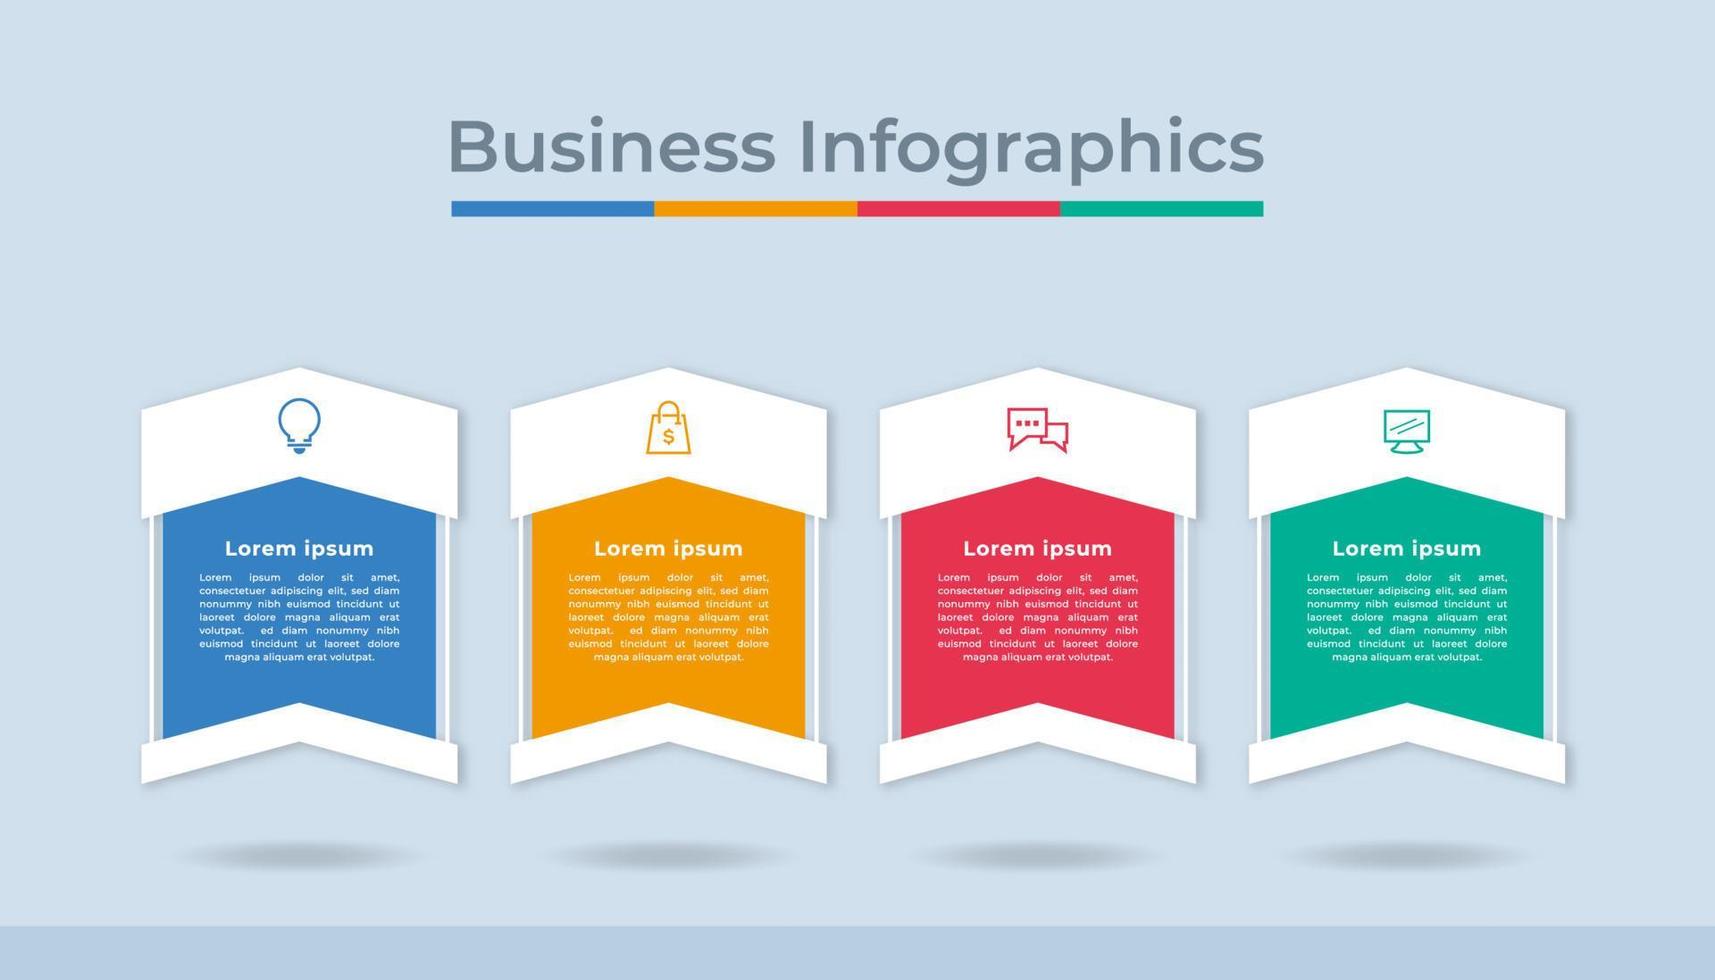 tijdlijn infographics bedrijf gegevens visualisatie werkwijze grafiek. abstract diagram diagram met stappen, opties vector